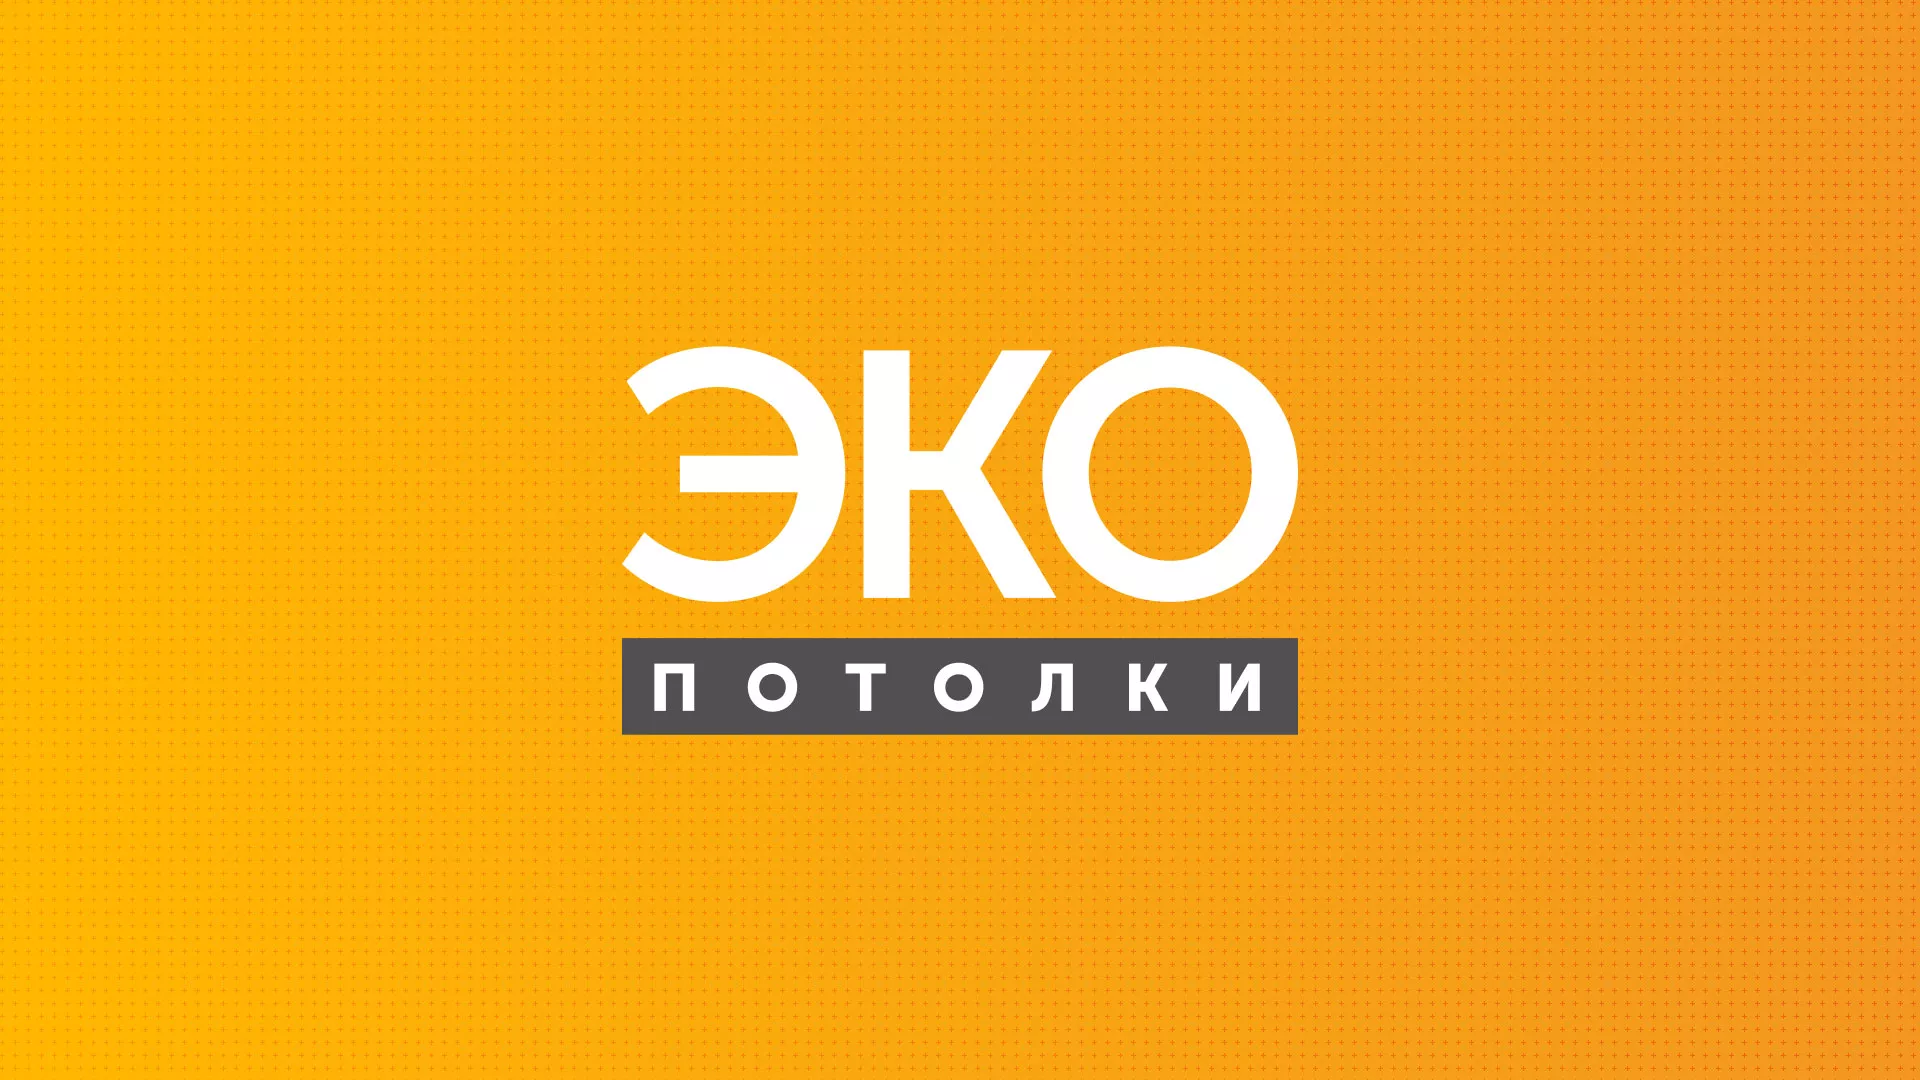 Разработка сайта по натяжным потолкам «Эко Потолки» в Елизово